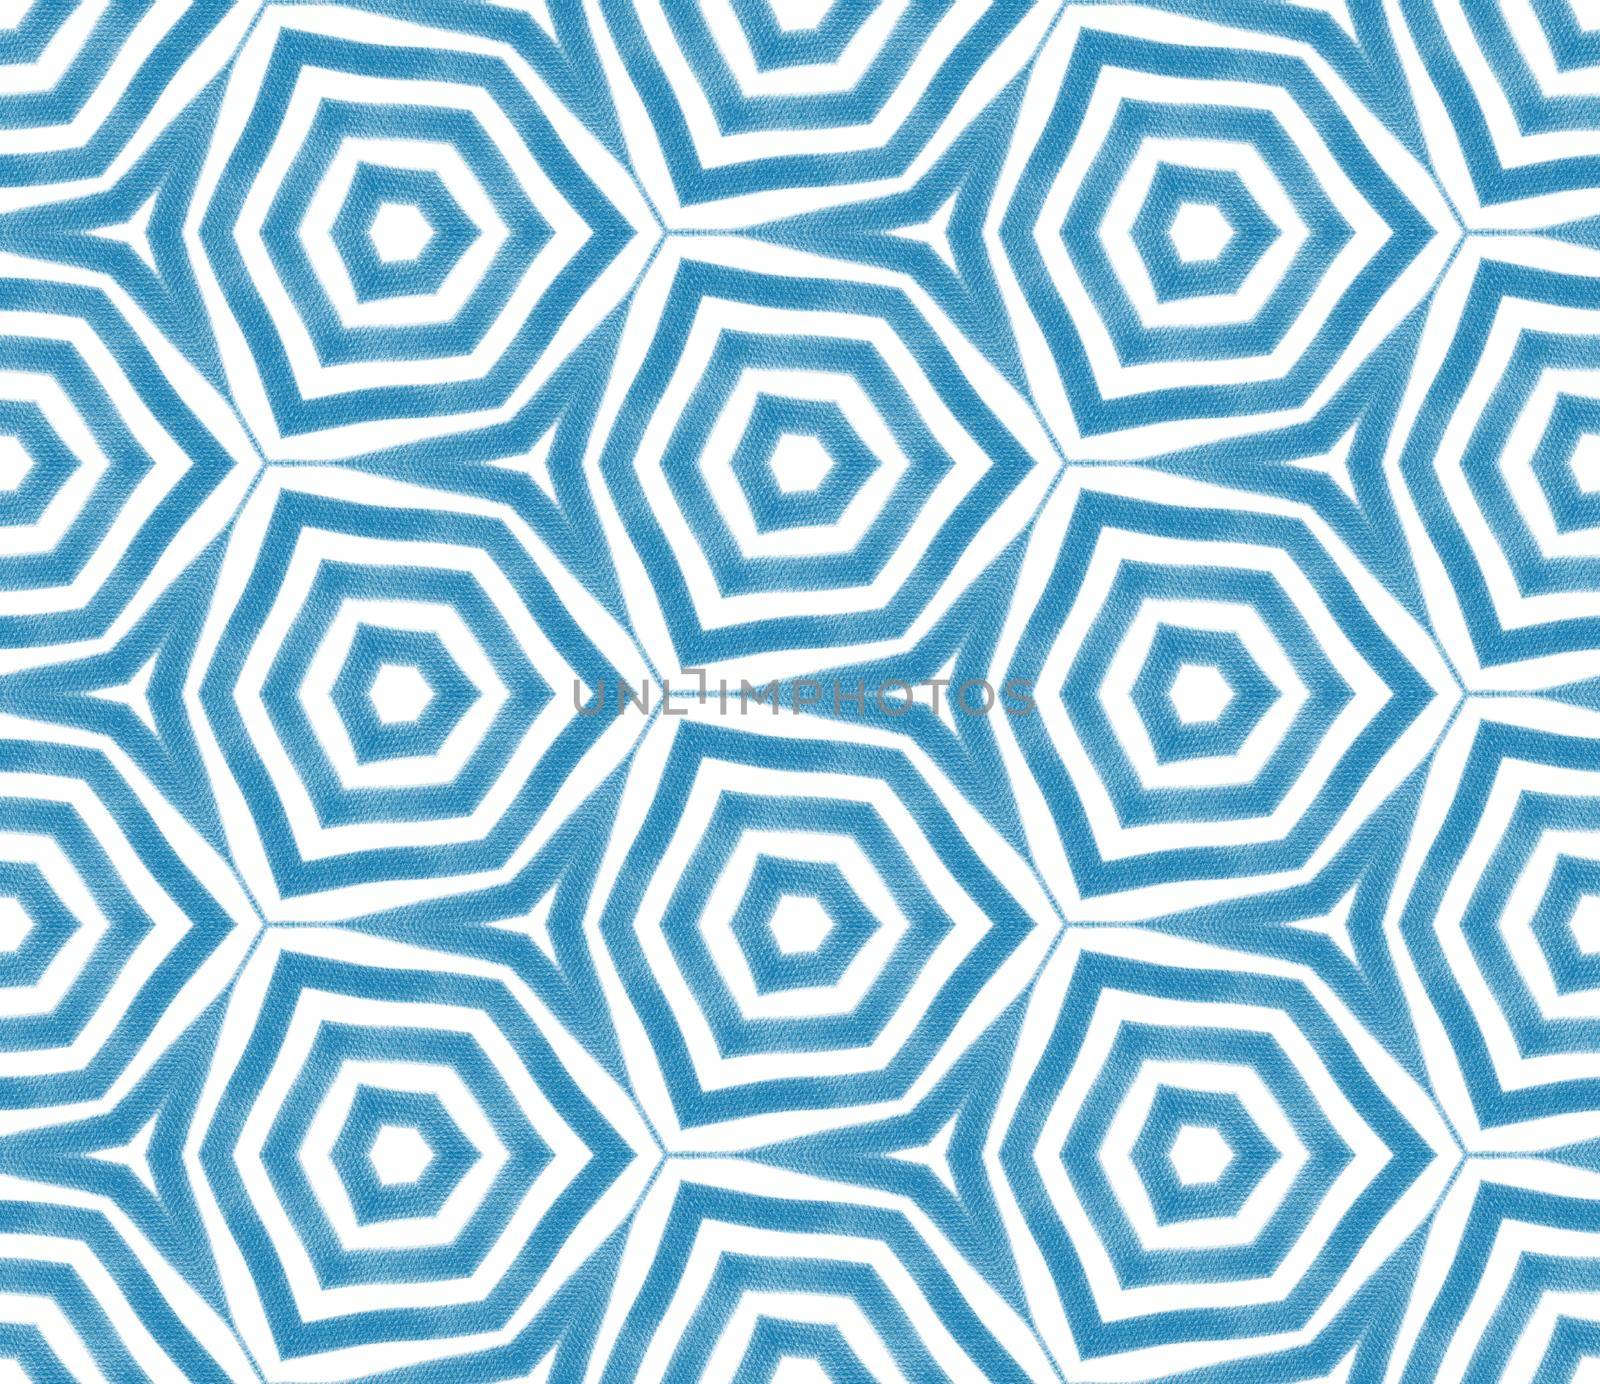 Striped hand drawn pattern. Blue symmetrical by beginagain